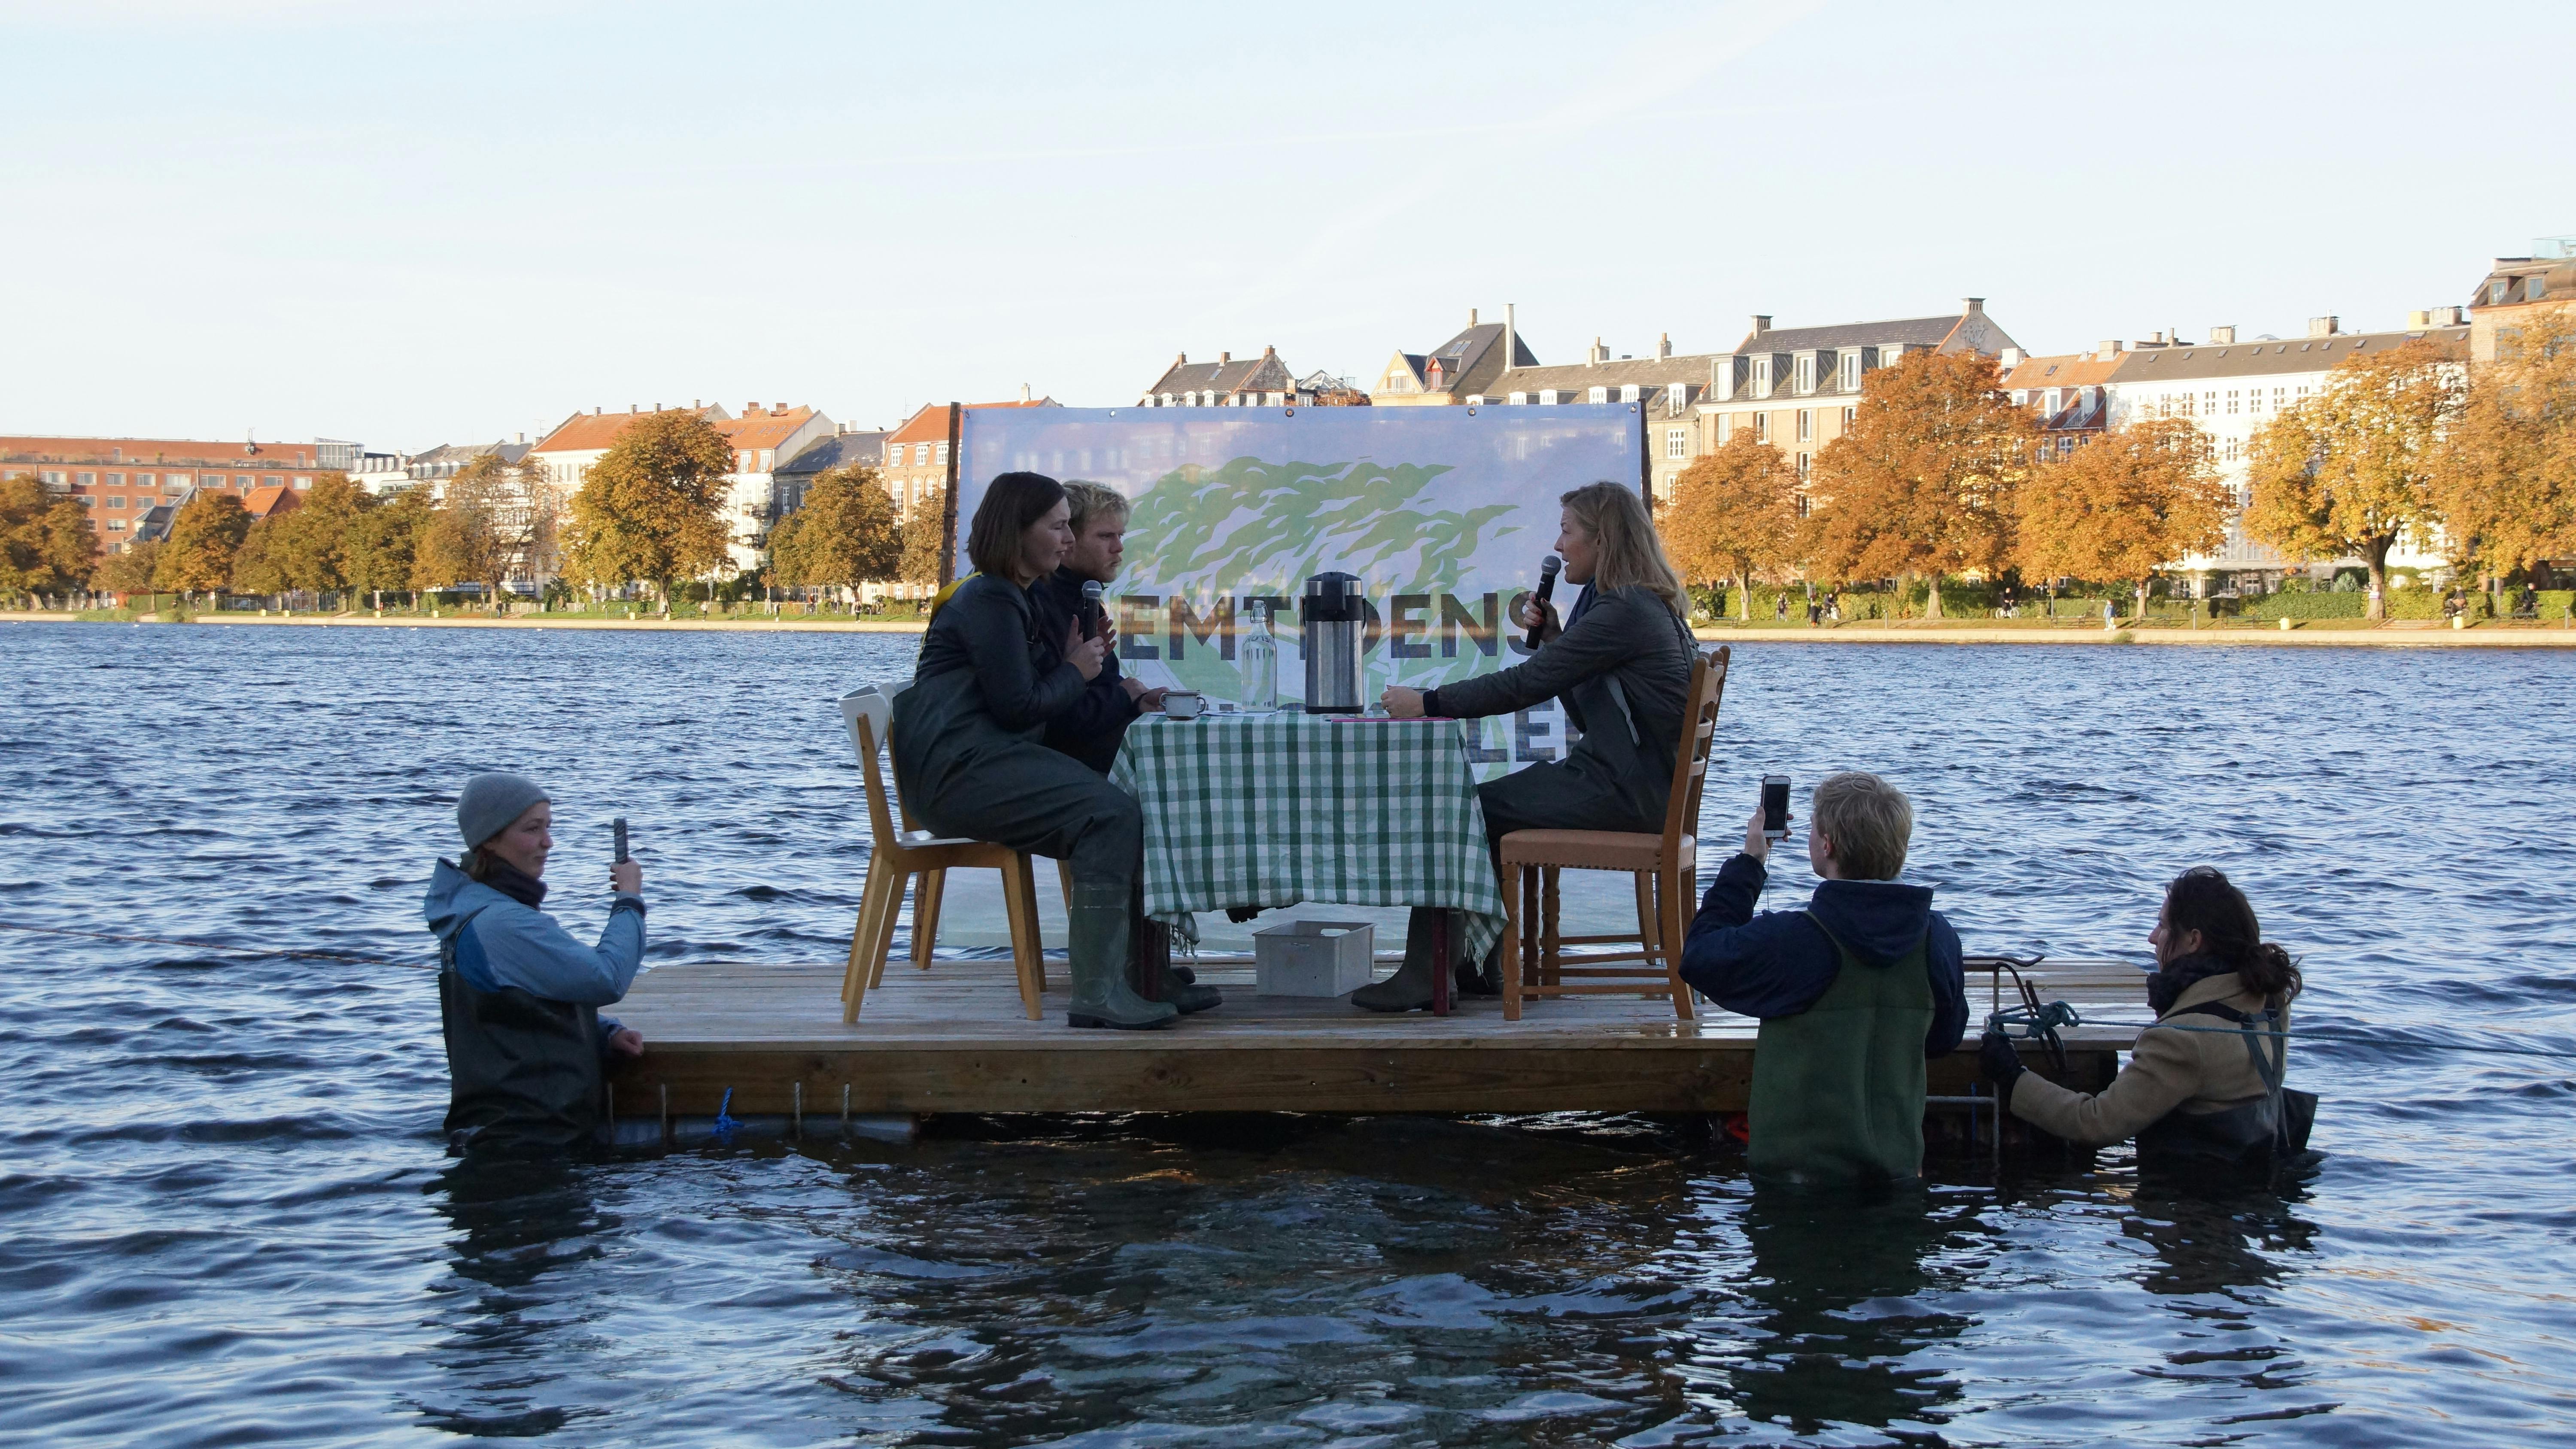 Valgkampen er i gang, og klimaaktivisterne inviterer politikere til "fremtidens mødelokale" - på en tømmerflåde. Foto: Den Grønne Ungdomsbevægelse